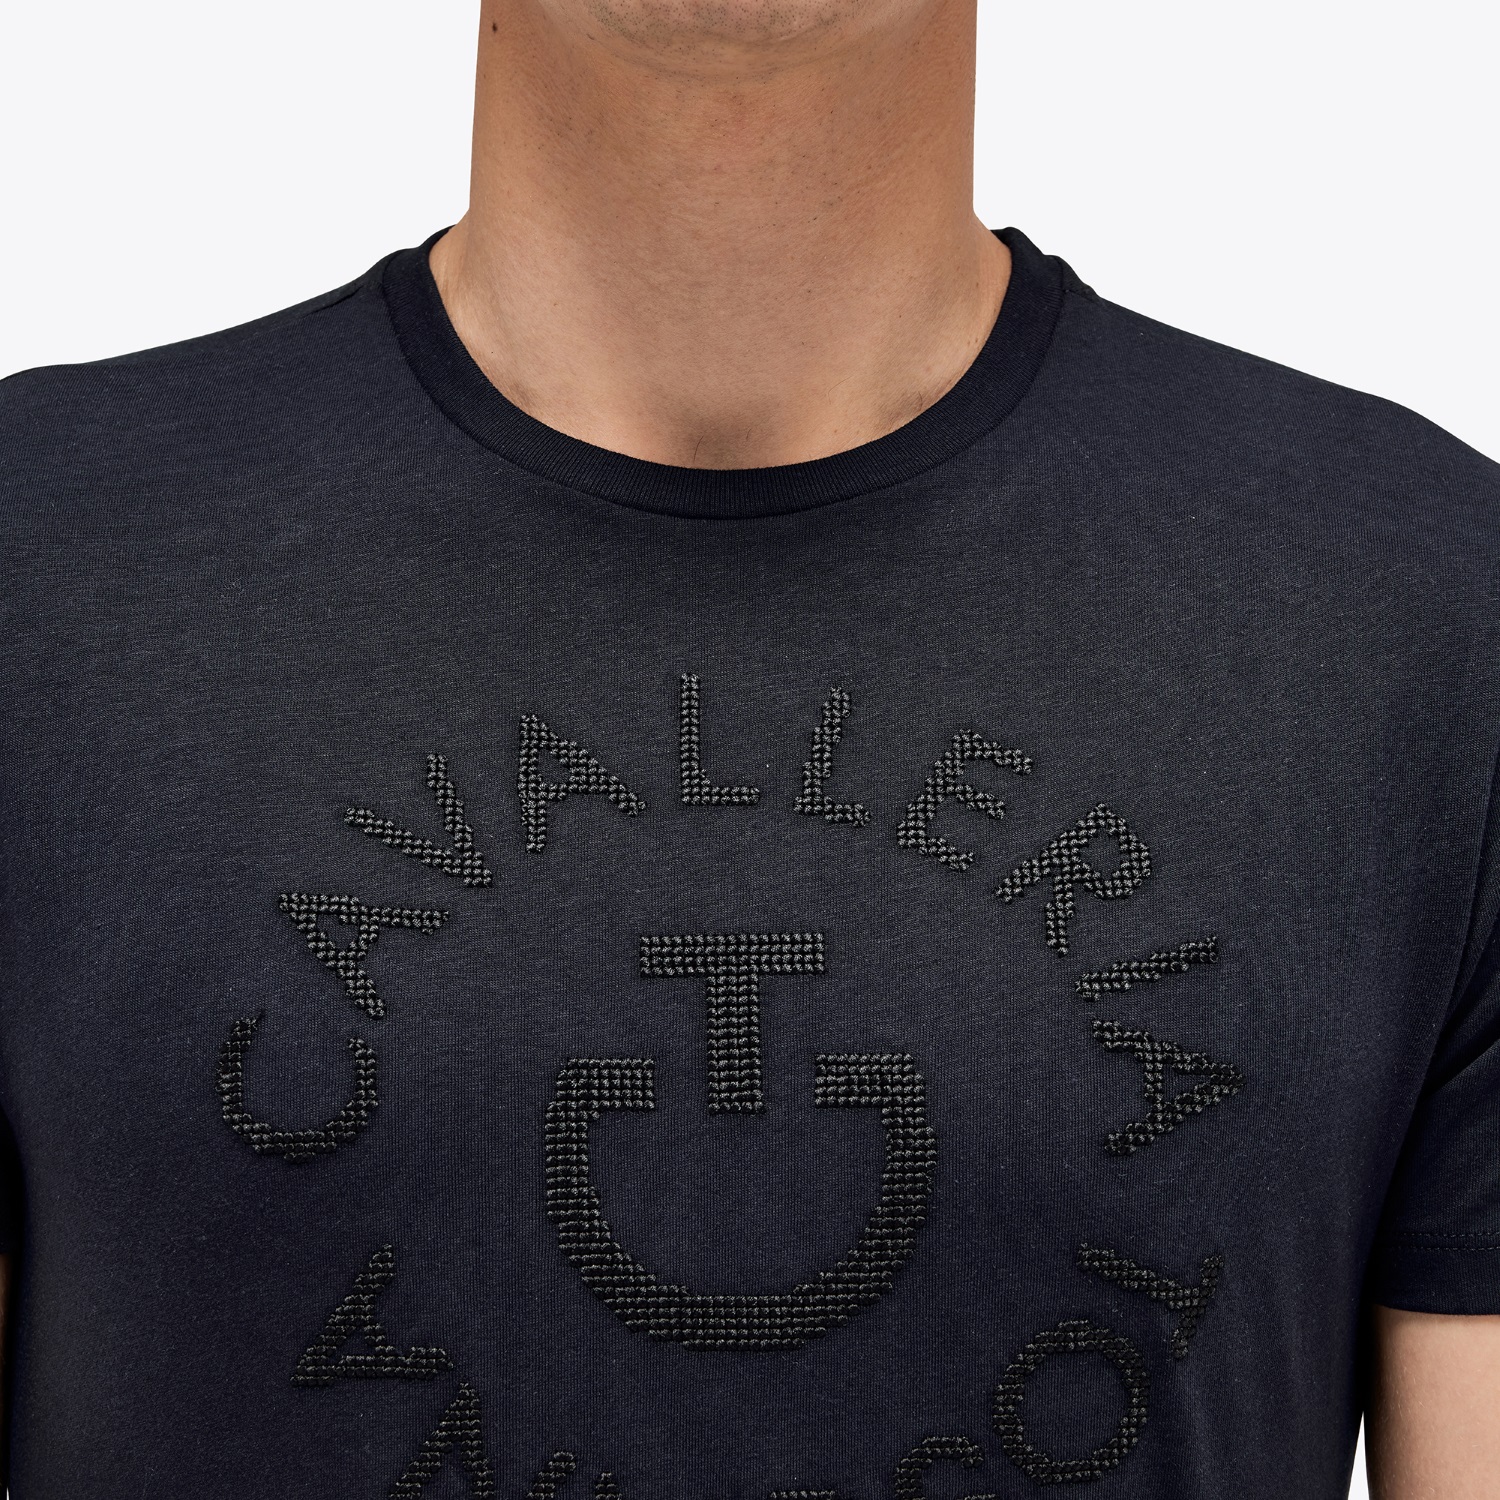 CAVALLERIA TOSCANA Herren T-Shirt Pixel Stickerei Orbit - navy - S - 3